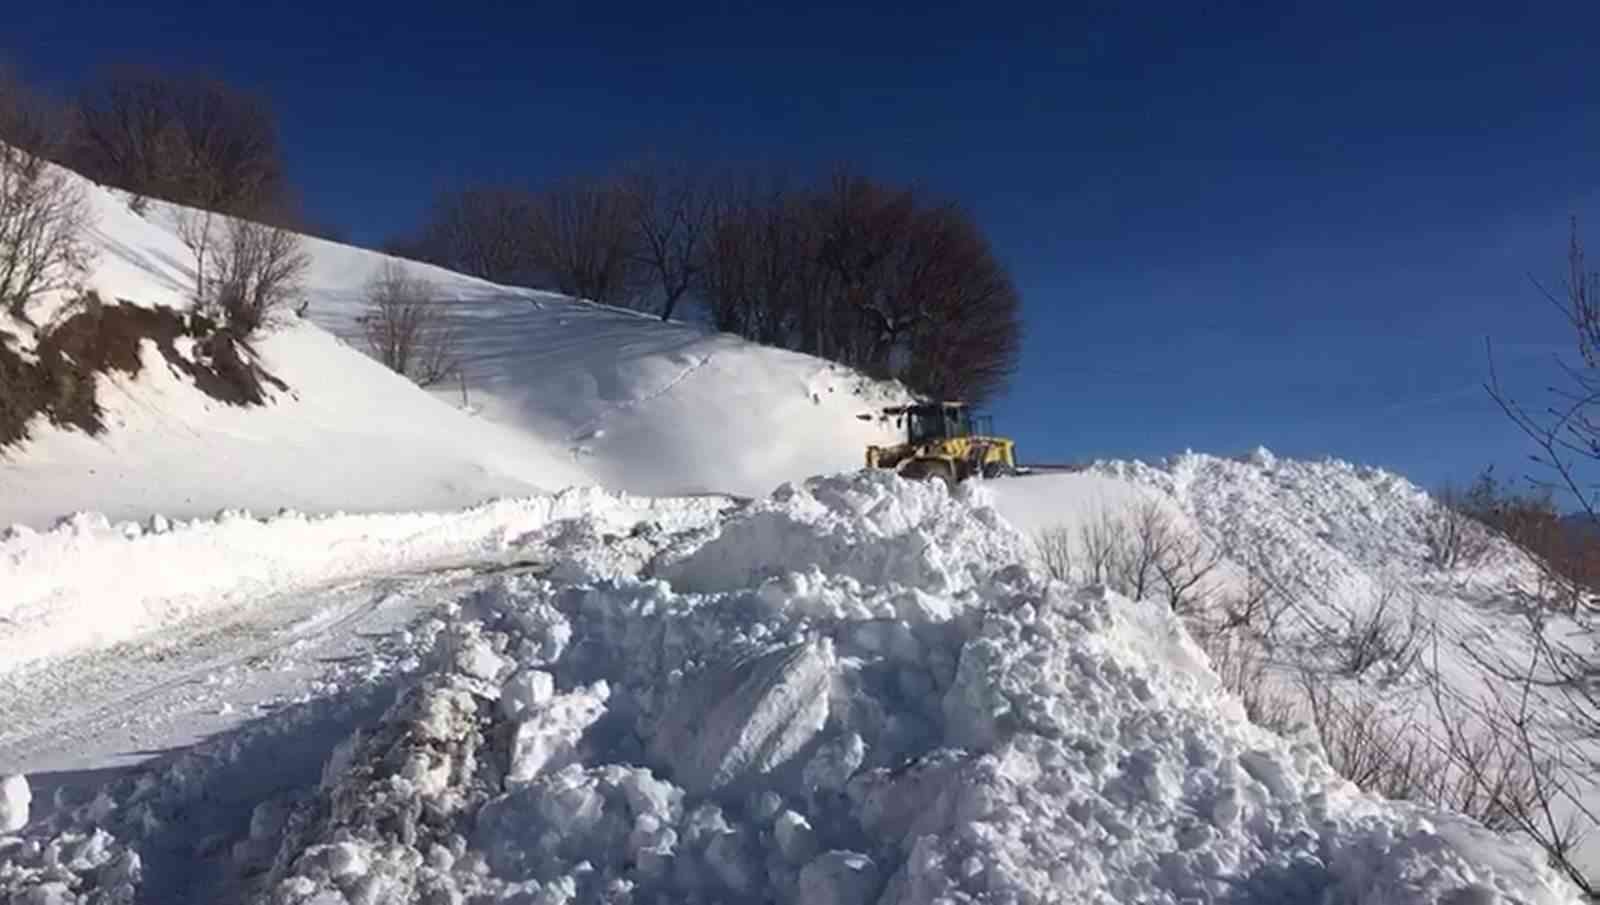 Siirt’te kar nedeniyle 73 köy yoluna ulaşım sağlanamıyor #siirt